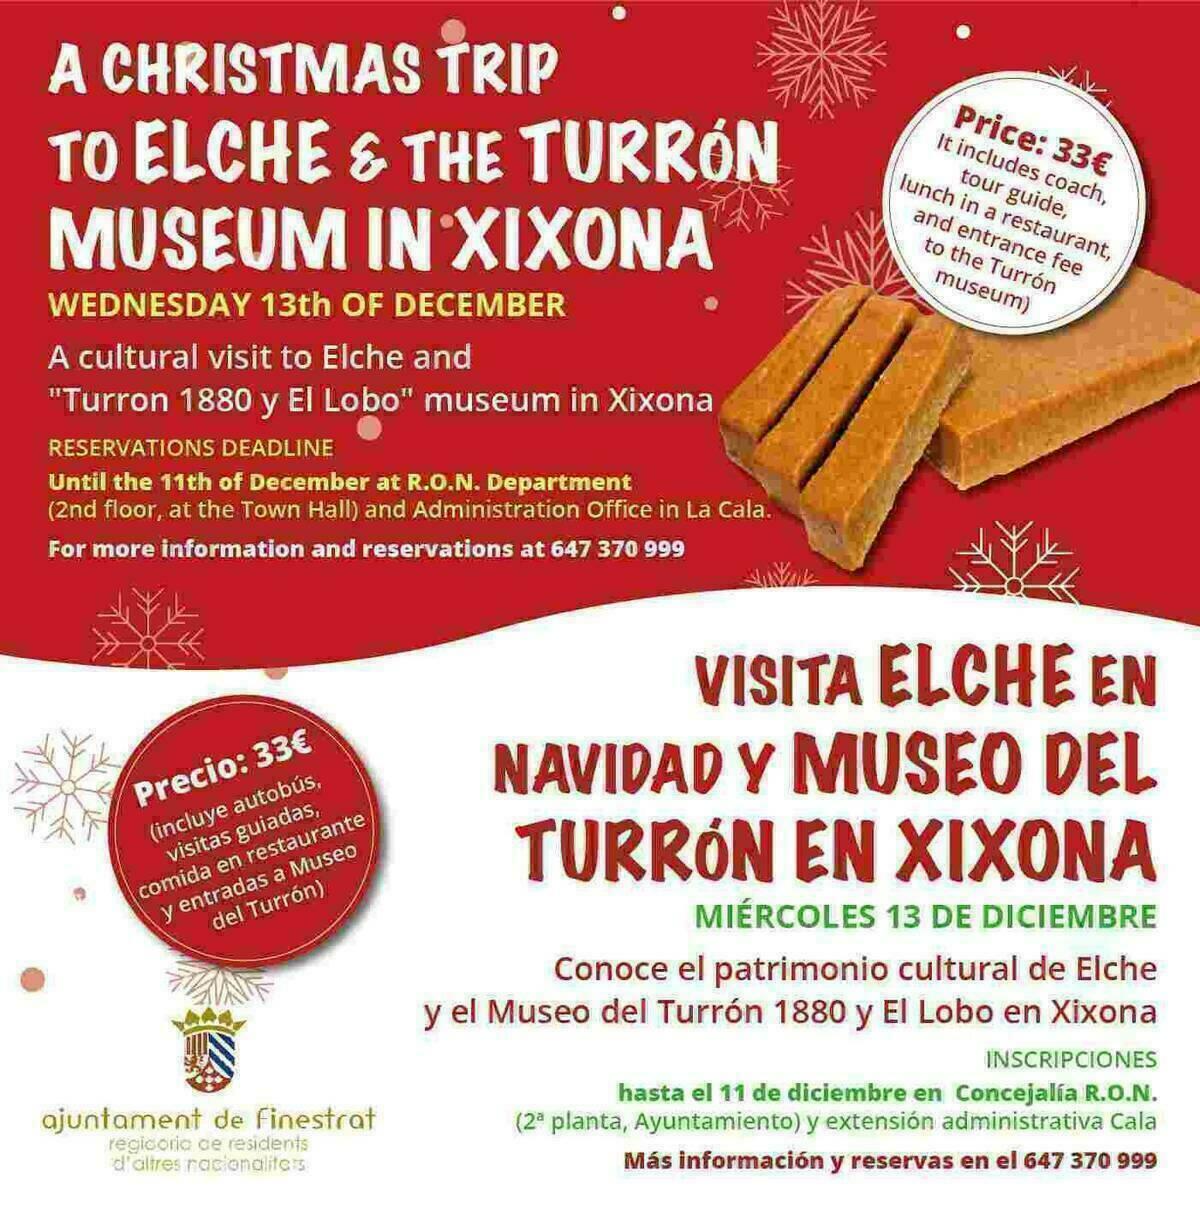 Finestrat · La concejalía de residentes de otras nacionalidades organiza una visita a elche en navidad y a los museos del turrón en Xixona